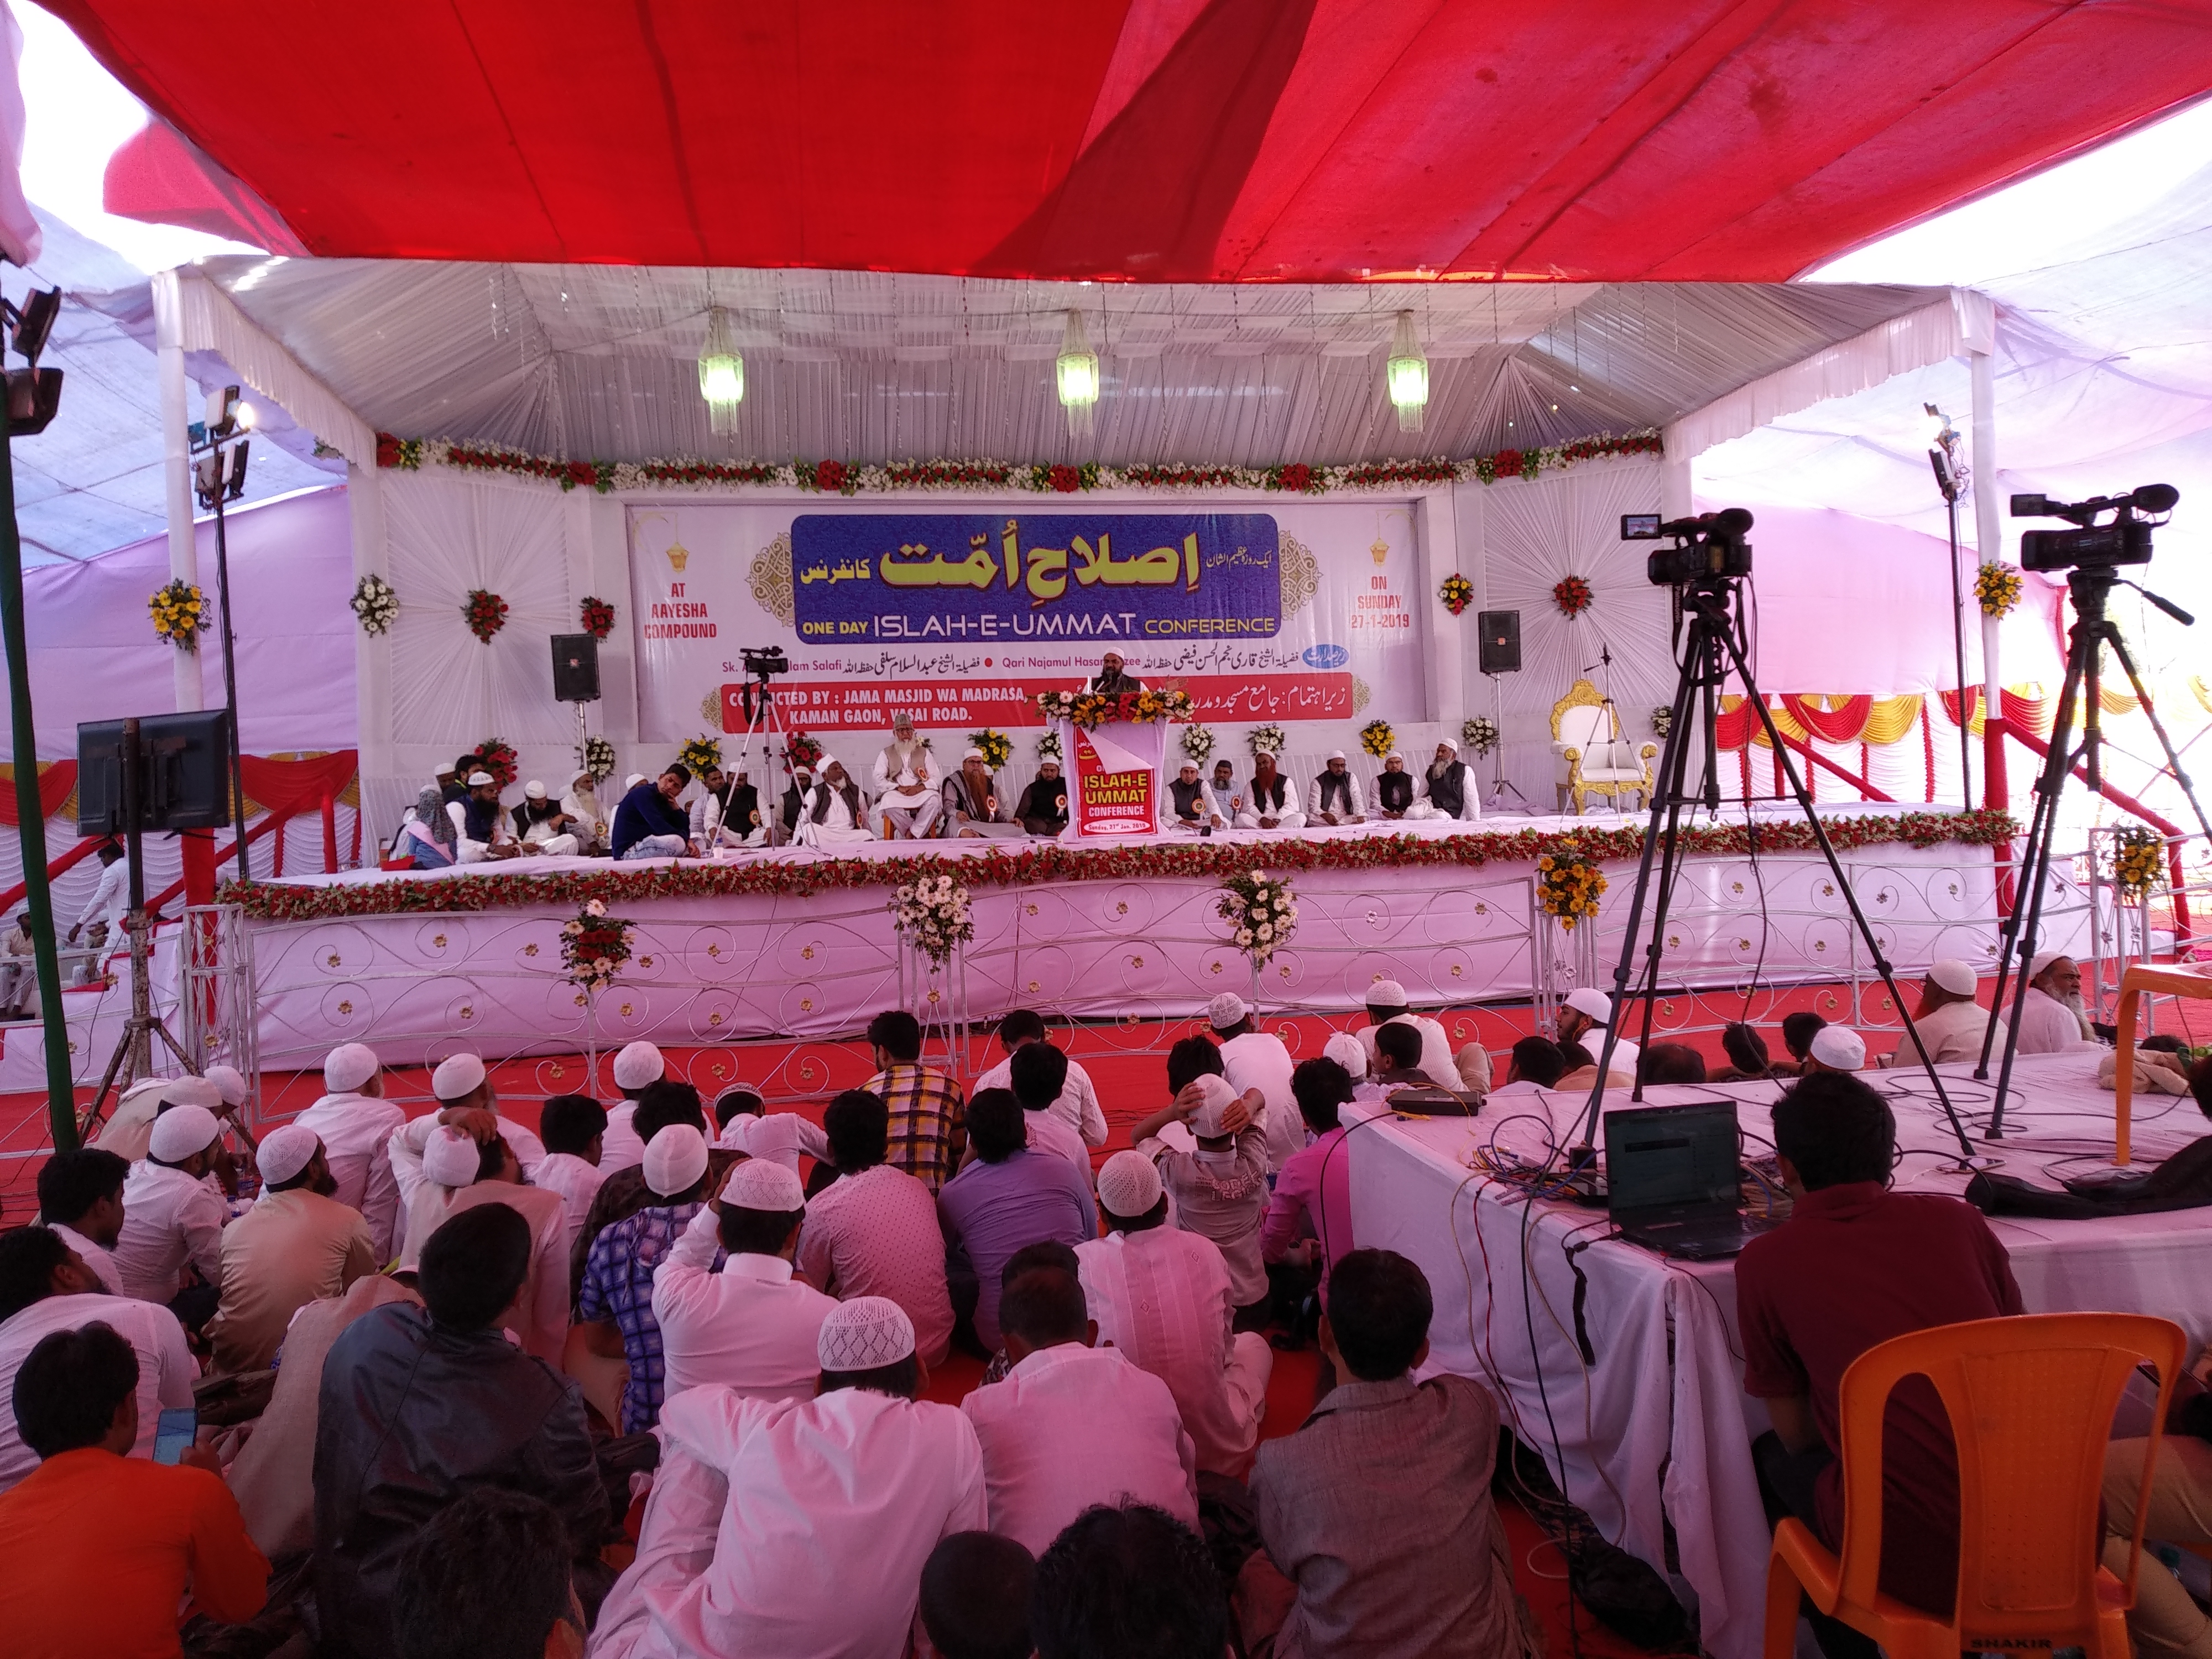 वसई-विरार शहर के कामण गांव में "इस्लाह ए उम्मत कांफ्रेंस" के नाम से हुआ भव्य धार्मिक सम्मेलन का आयोजन, देश-विदेश के विश्व प्रसिद्ध आलिमों ने कांफ्रेंस को किया संबोधित | New India Times